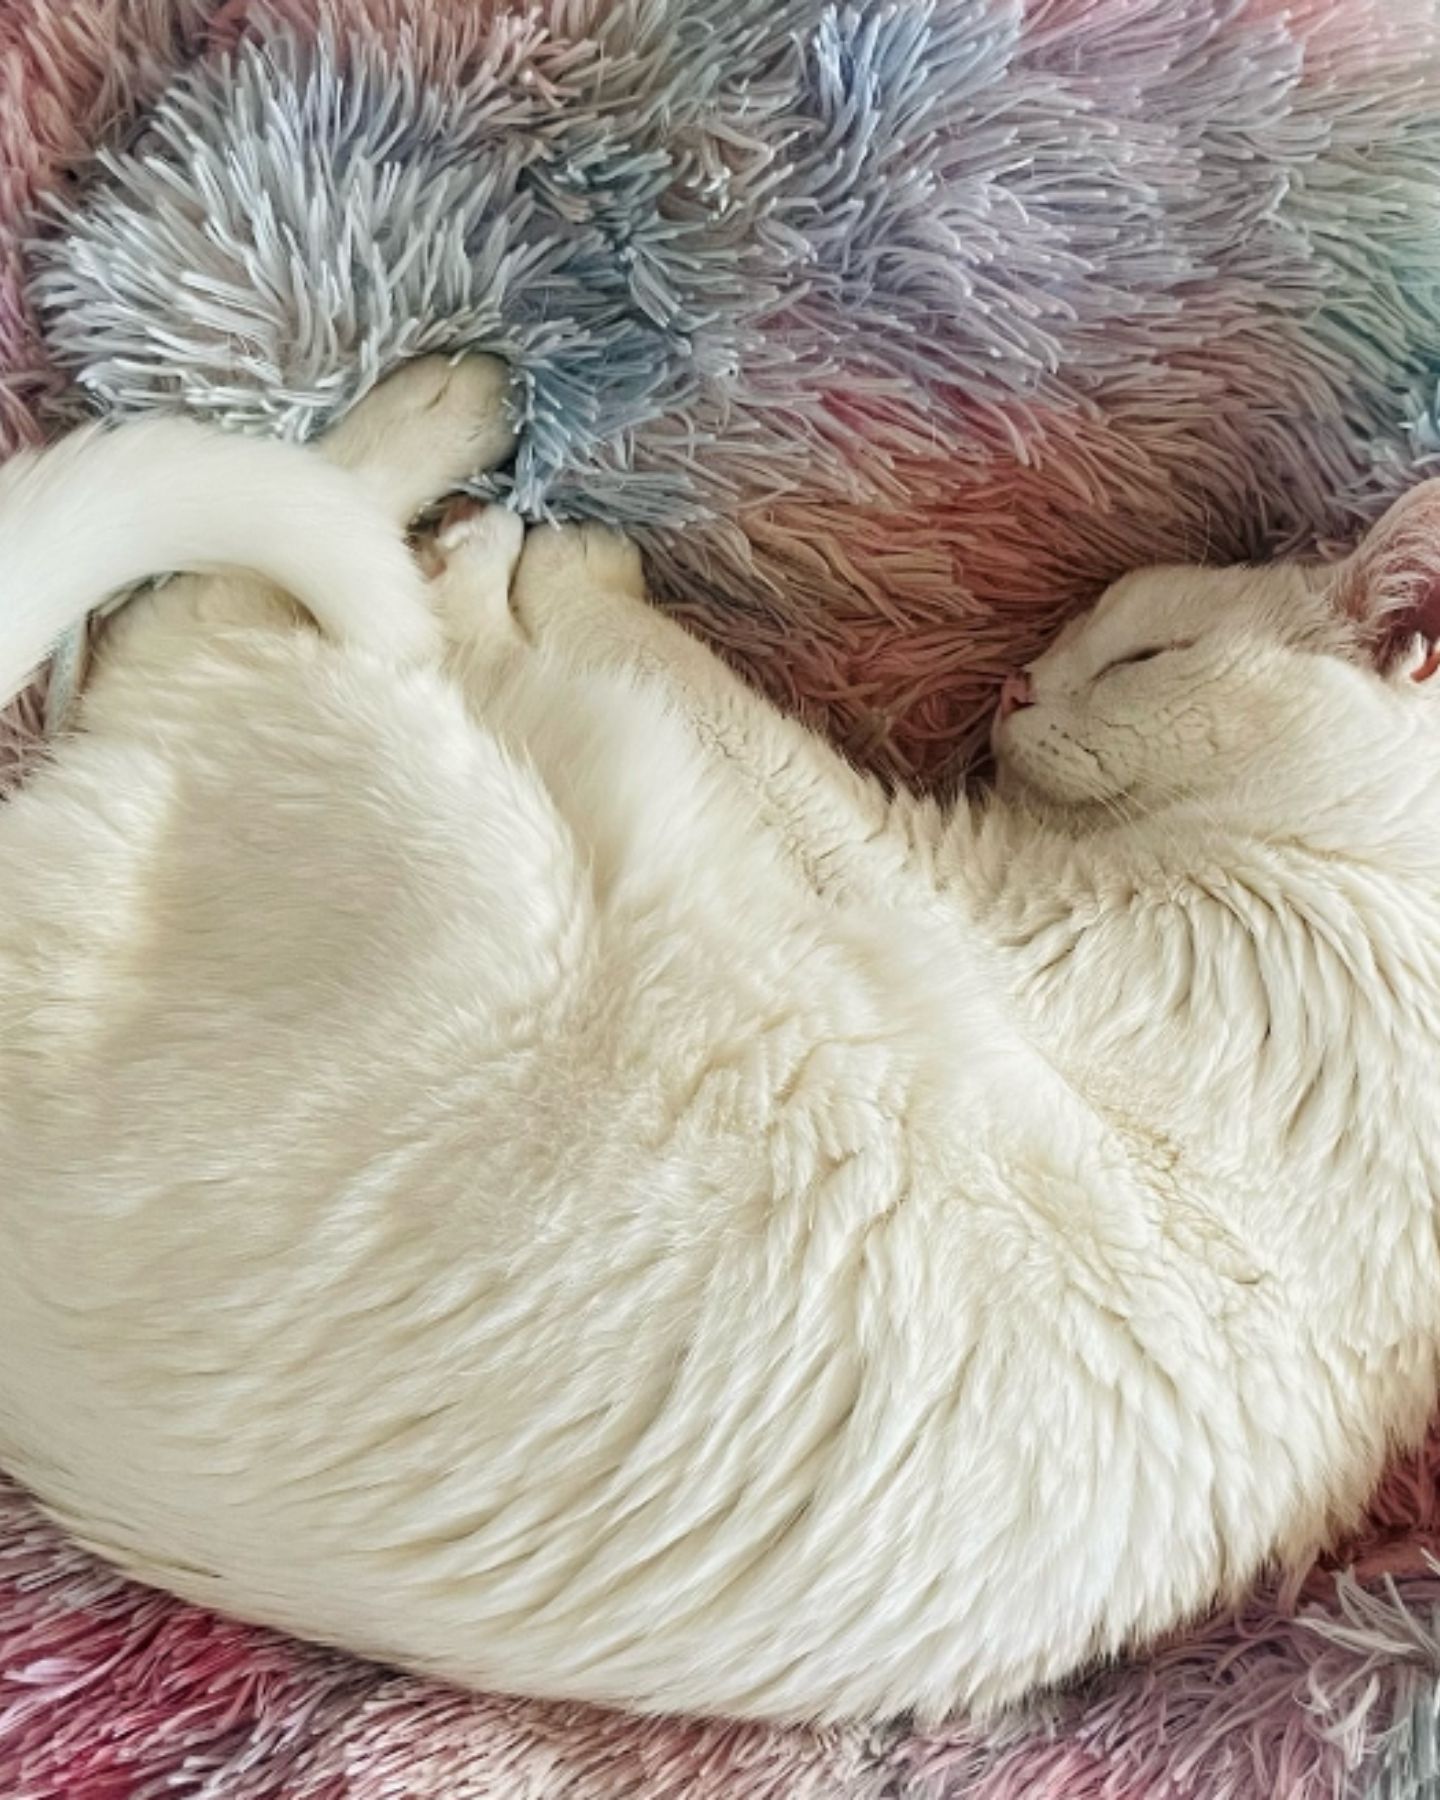 senior cat lying on fluffy blanket